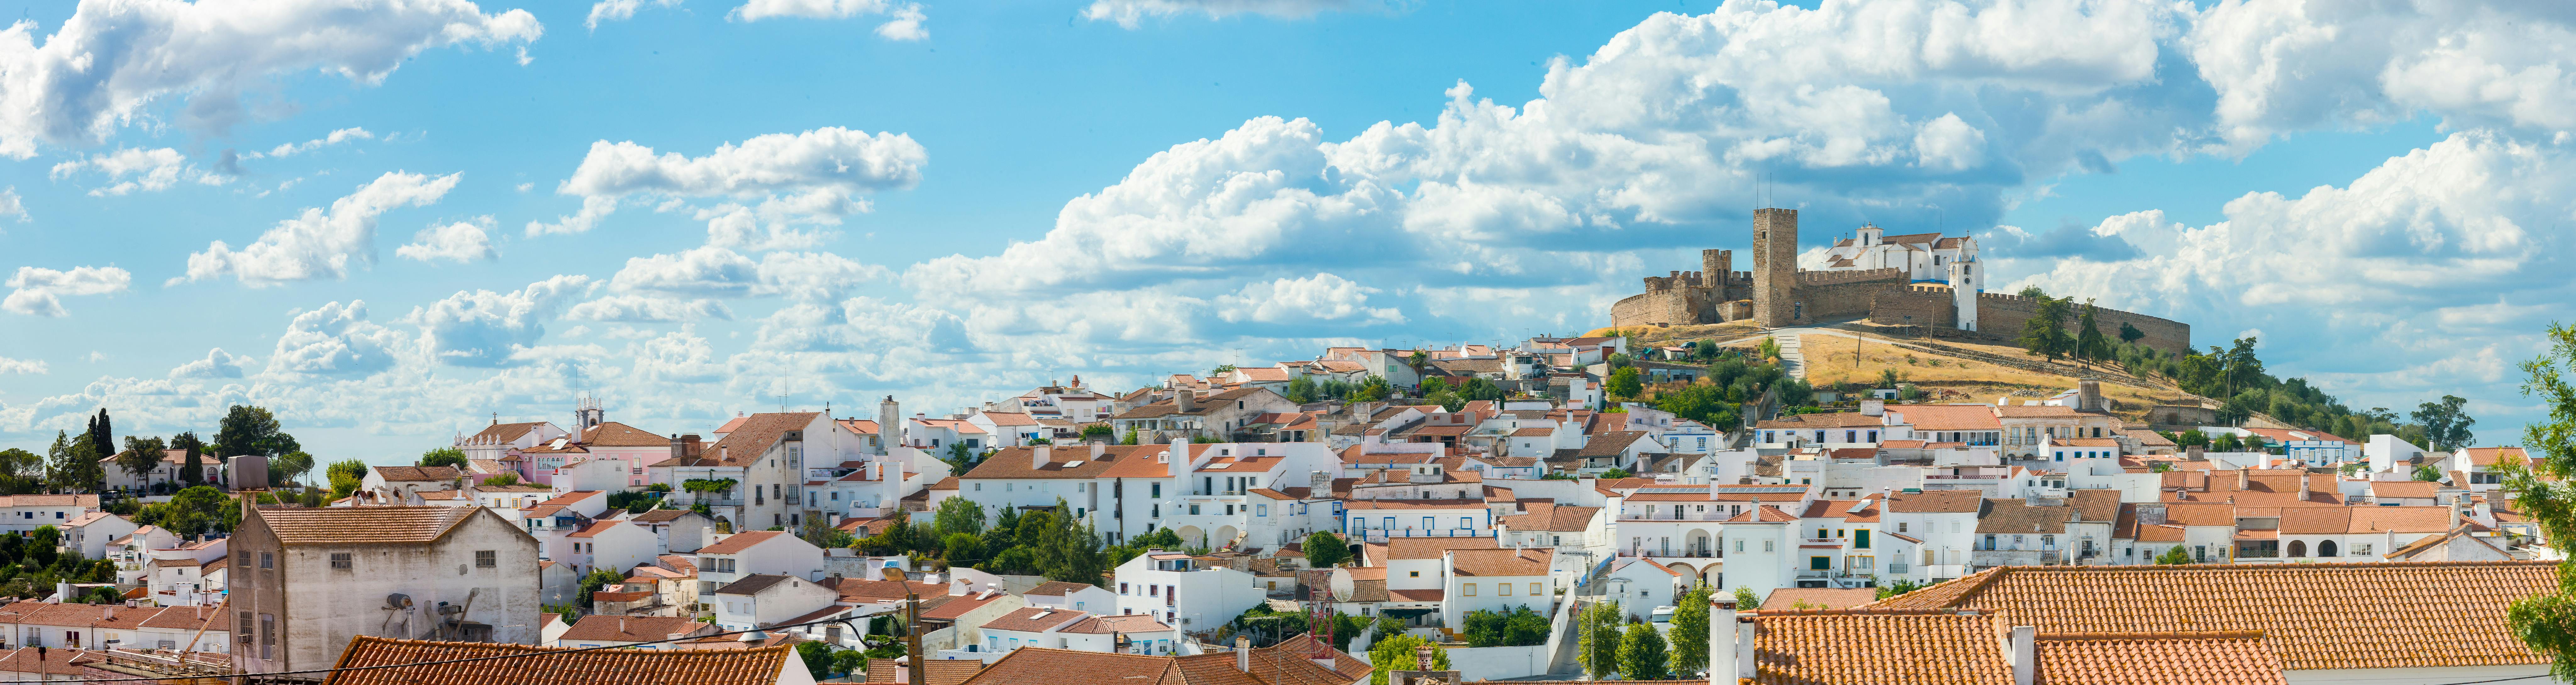 Excursión privada de Évora y Monsaraz desde Lisboa con degustación de vinos y gastronomía.